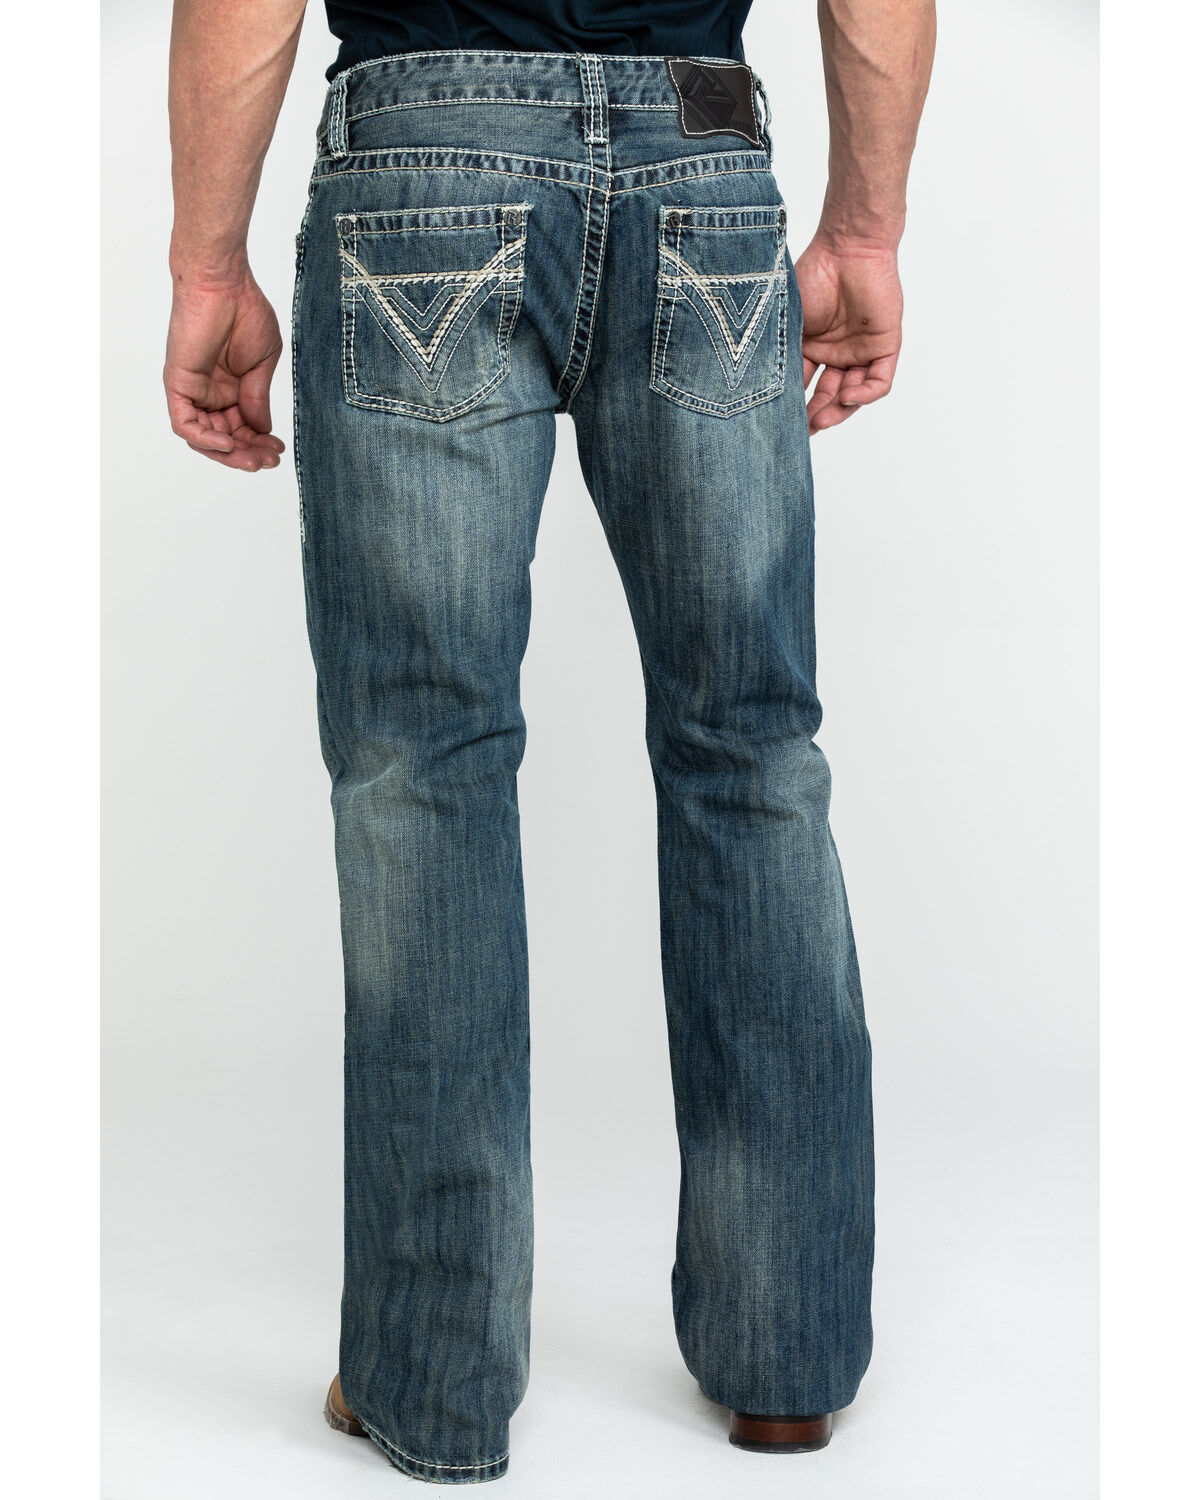 dof jeans price